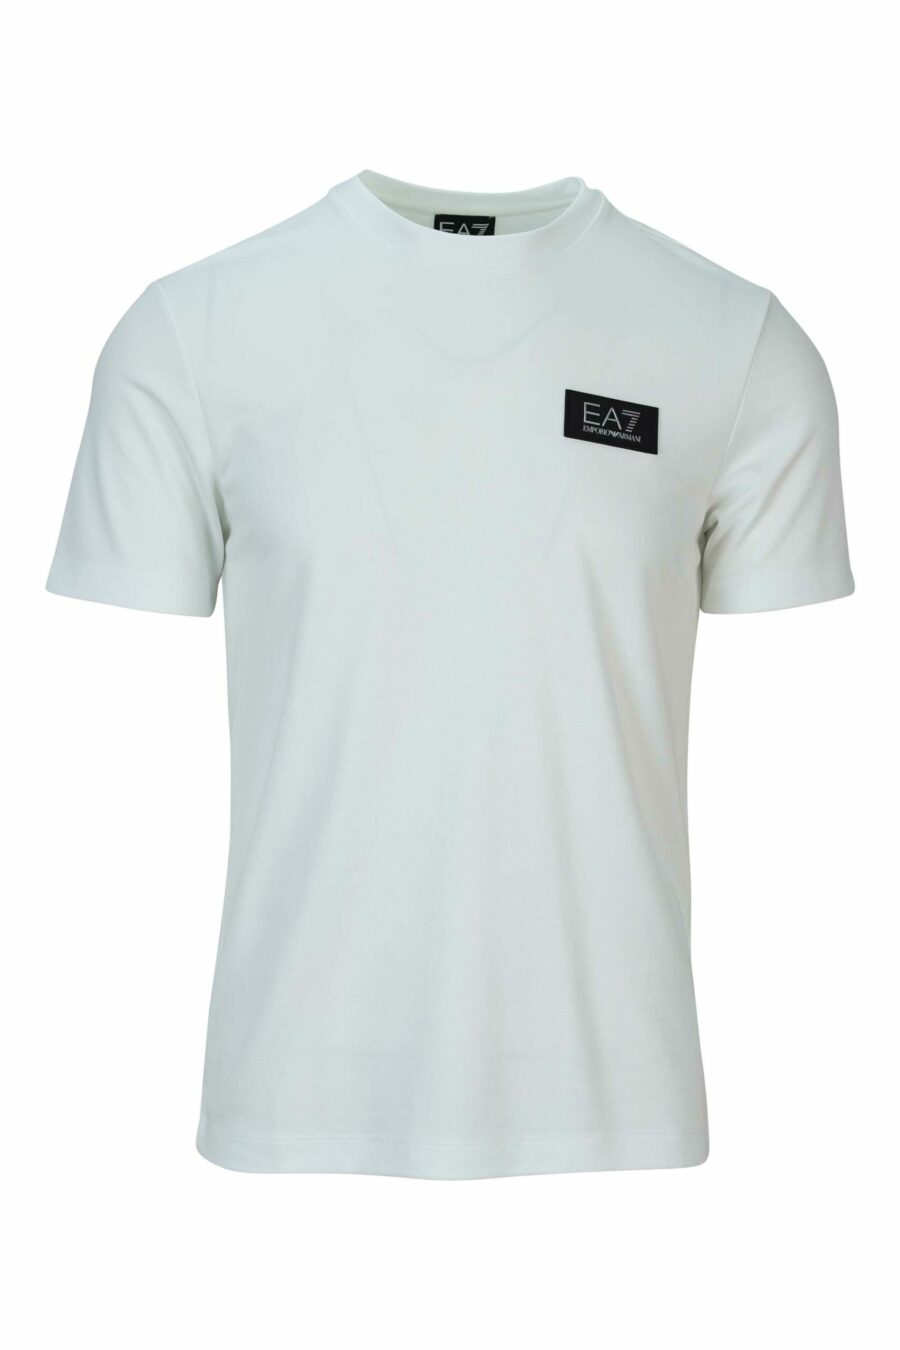 T-shirt blanc oversize avec mini-logo "lux identity" blanc sur fond noir - 8058947508495 scaled